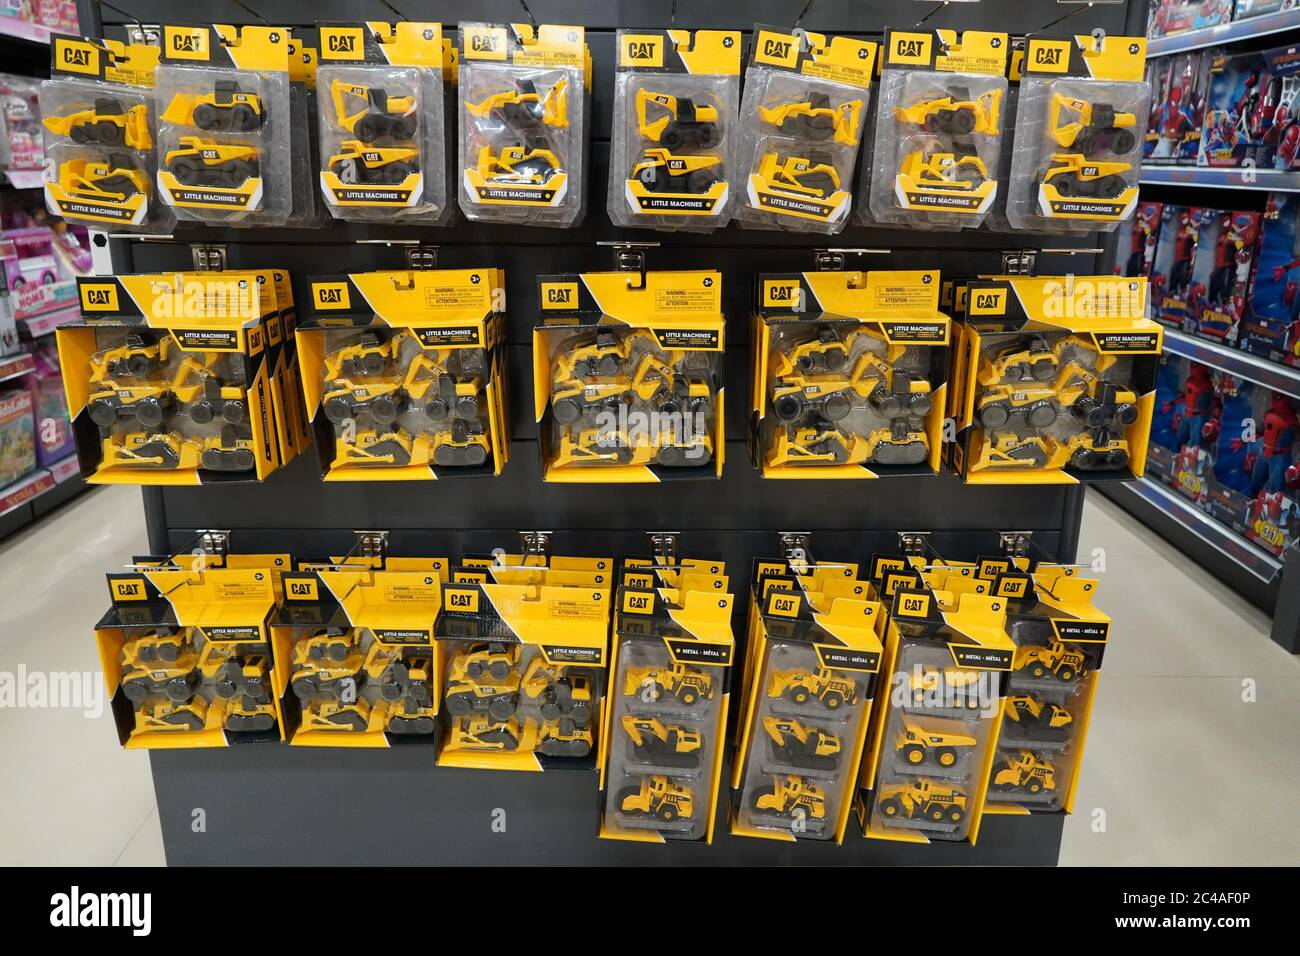 Dubai eau décembre 2019 - UNE collection de pelles hydrauliques et jouets  de camion CAT au magasin Toys. Jouets suspendus en magasin pour la vente.  Jouets DE la marque CAT dans un